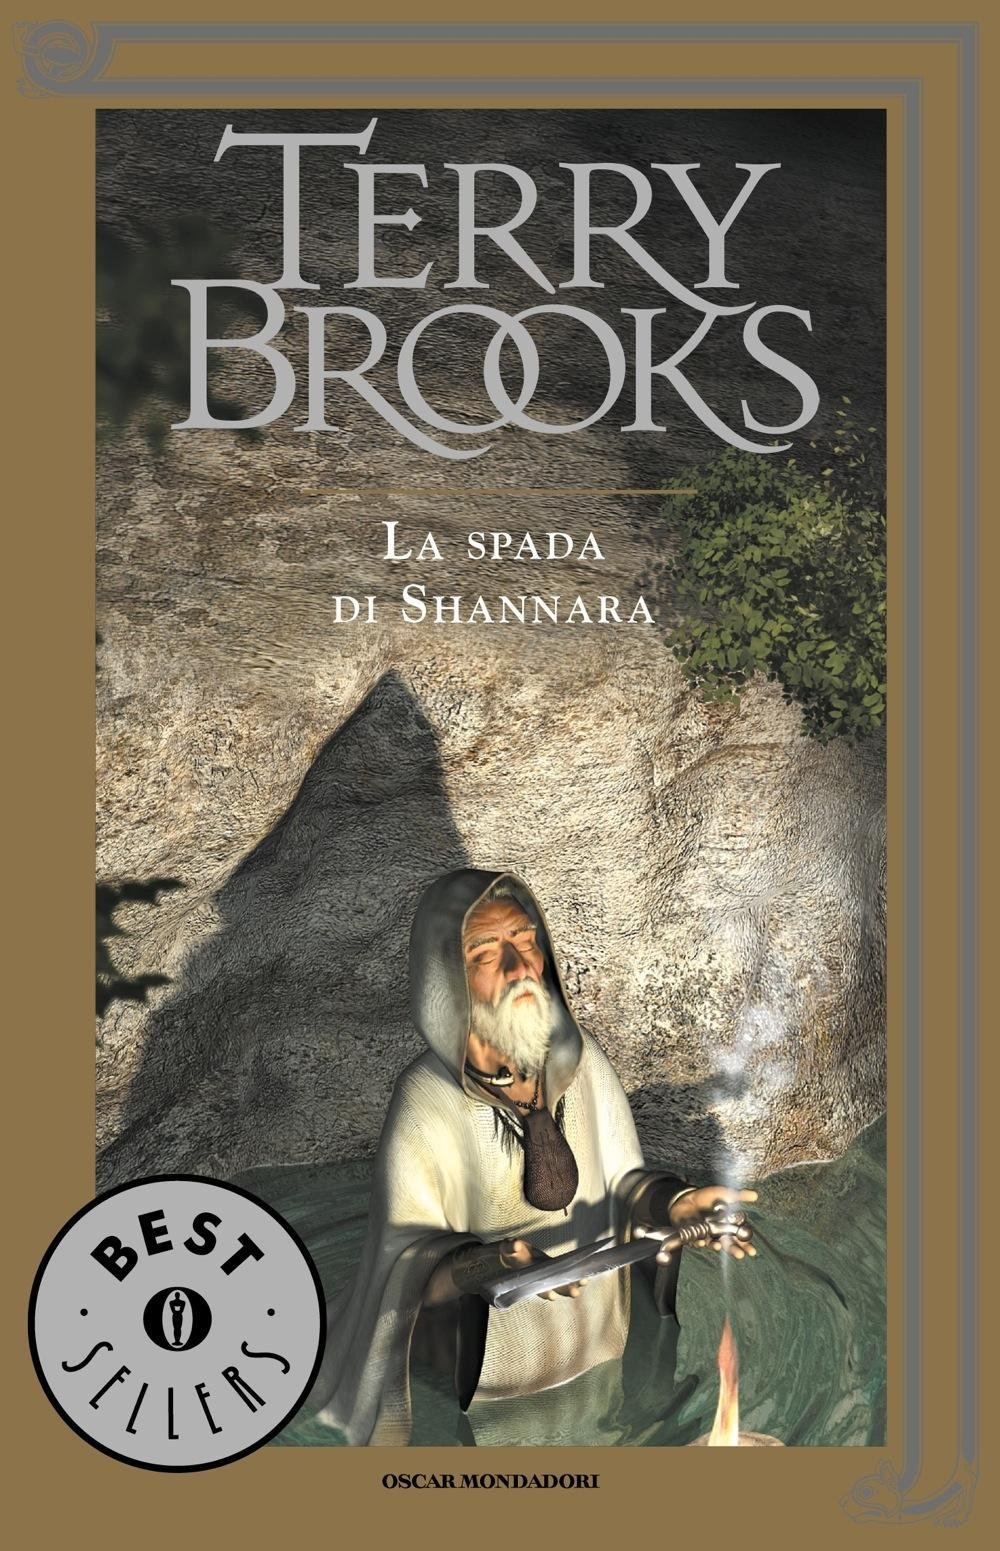 La spada di Shannara (Terry Brooks)Acquistalo su Amazon